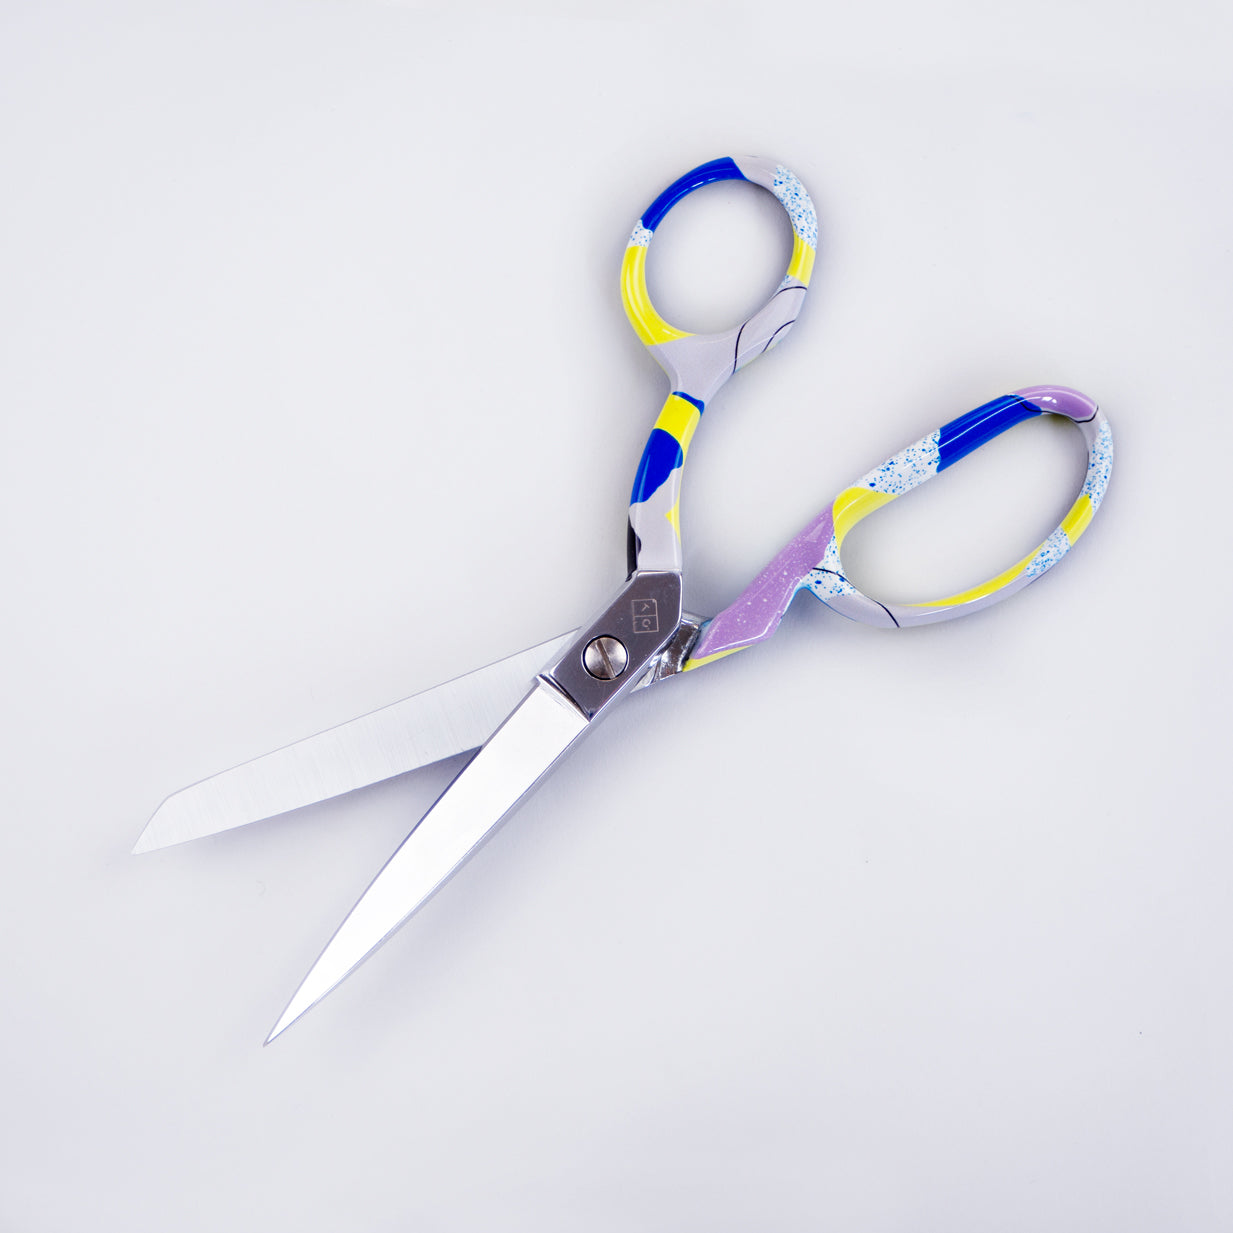 patterned scissors open